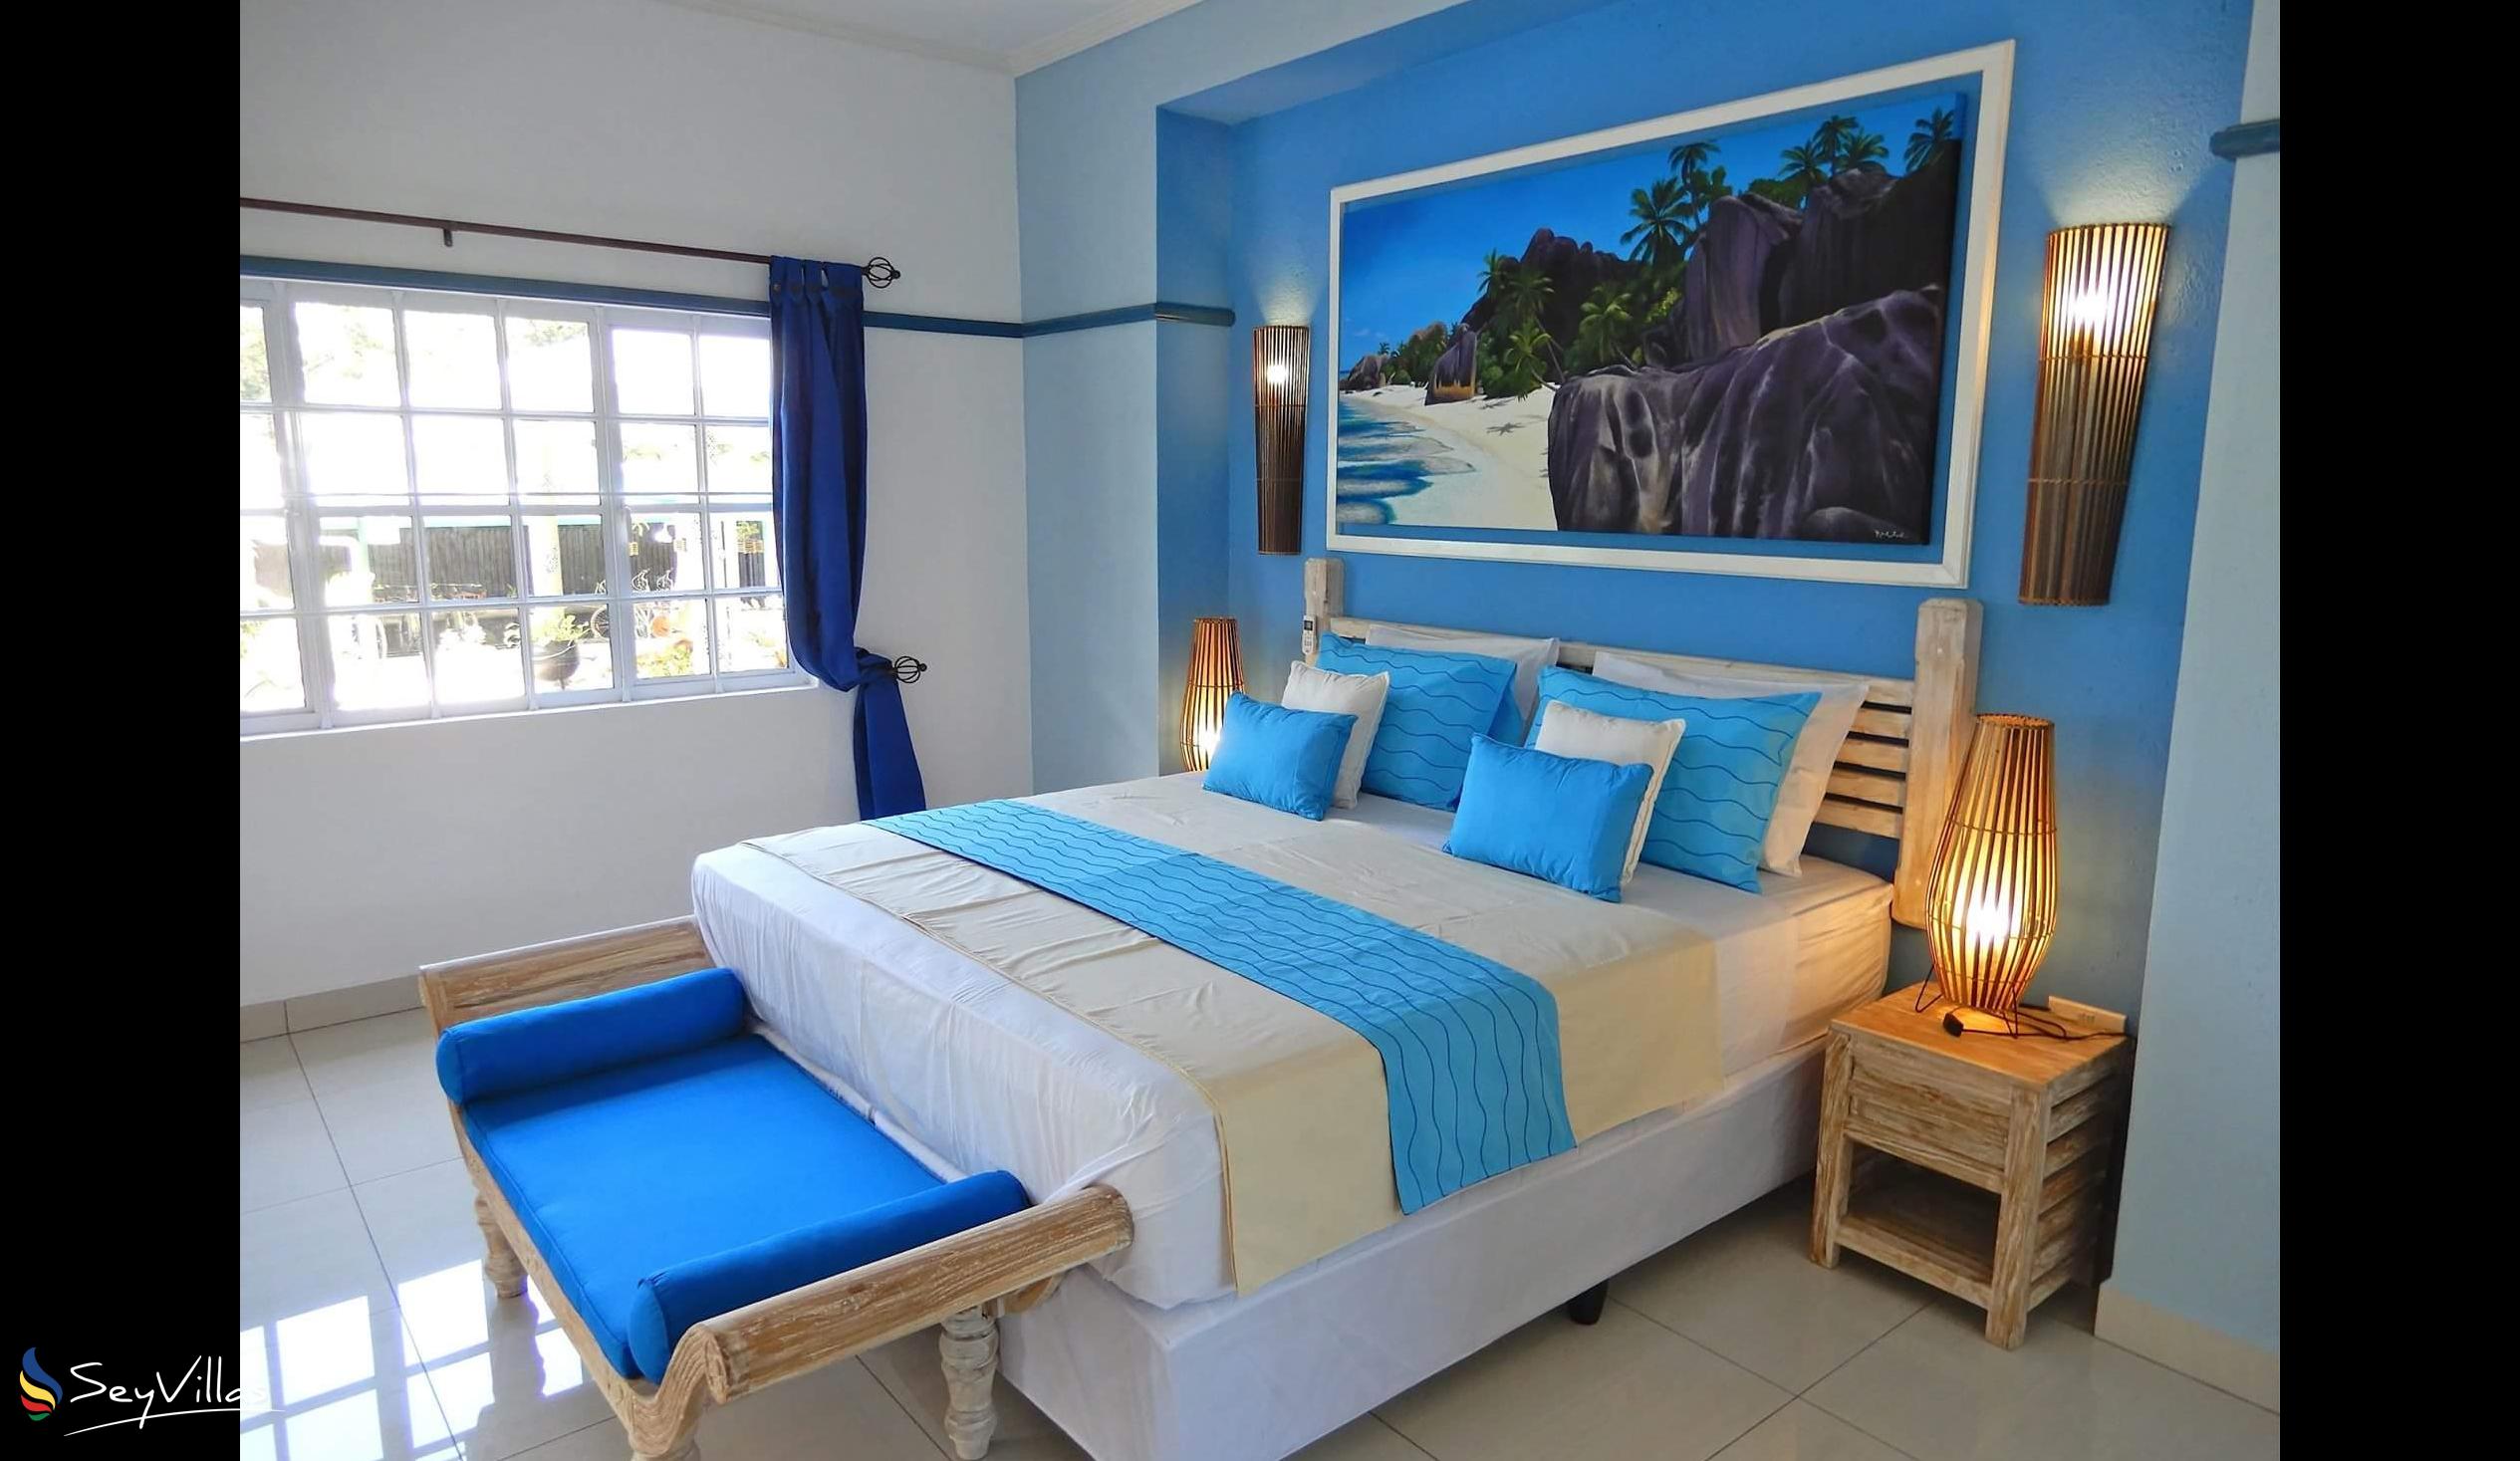 Foto 40: Villa Charme De L'ile - Appartamento Deluxe con vista piscina - La Digue (Seychelles)